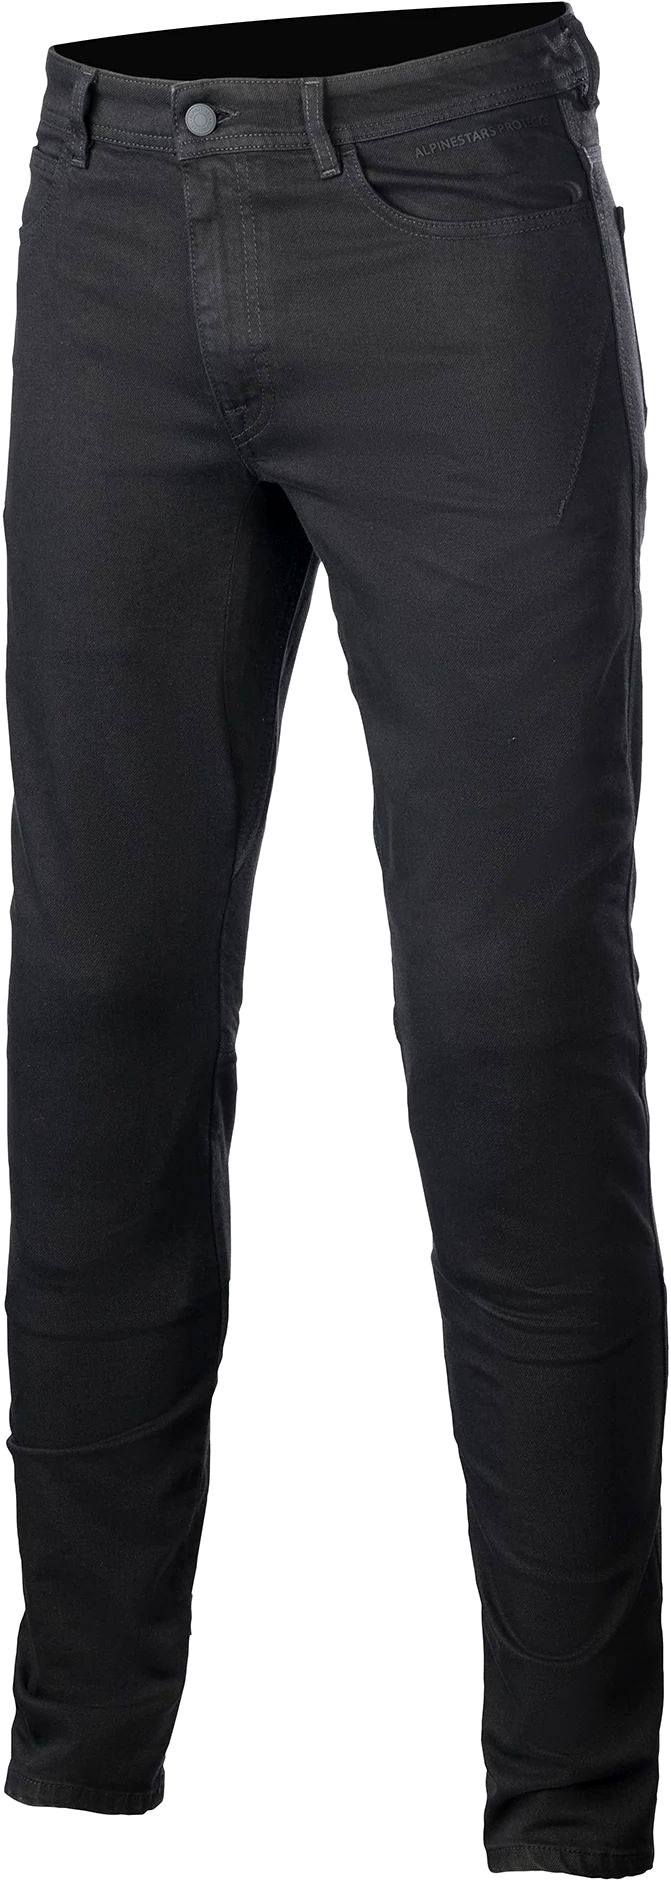 Alpinestars Argon, jeans - Noir - 30